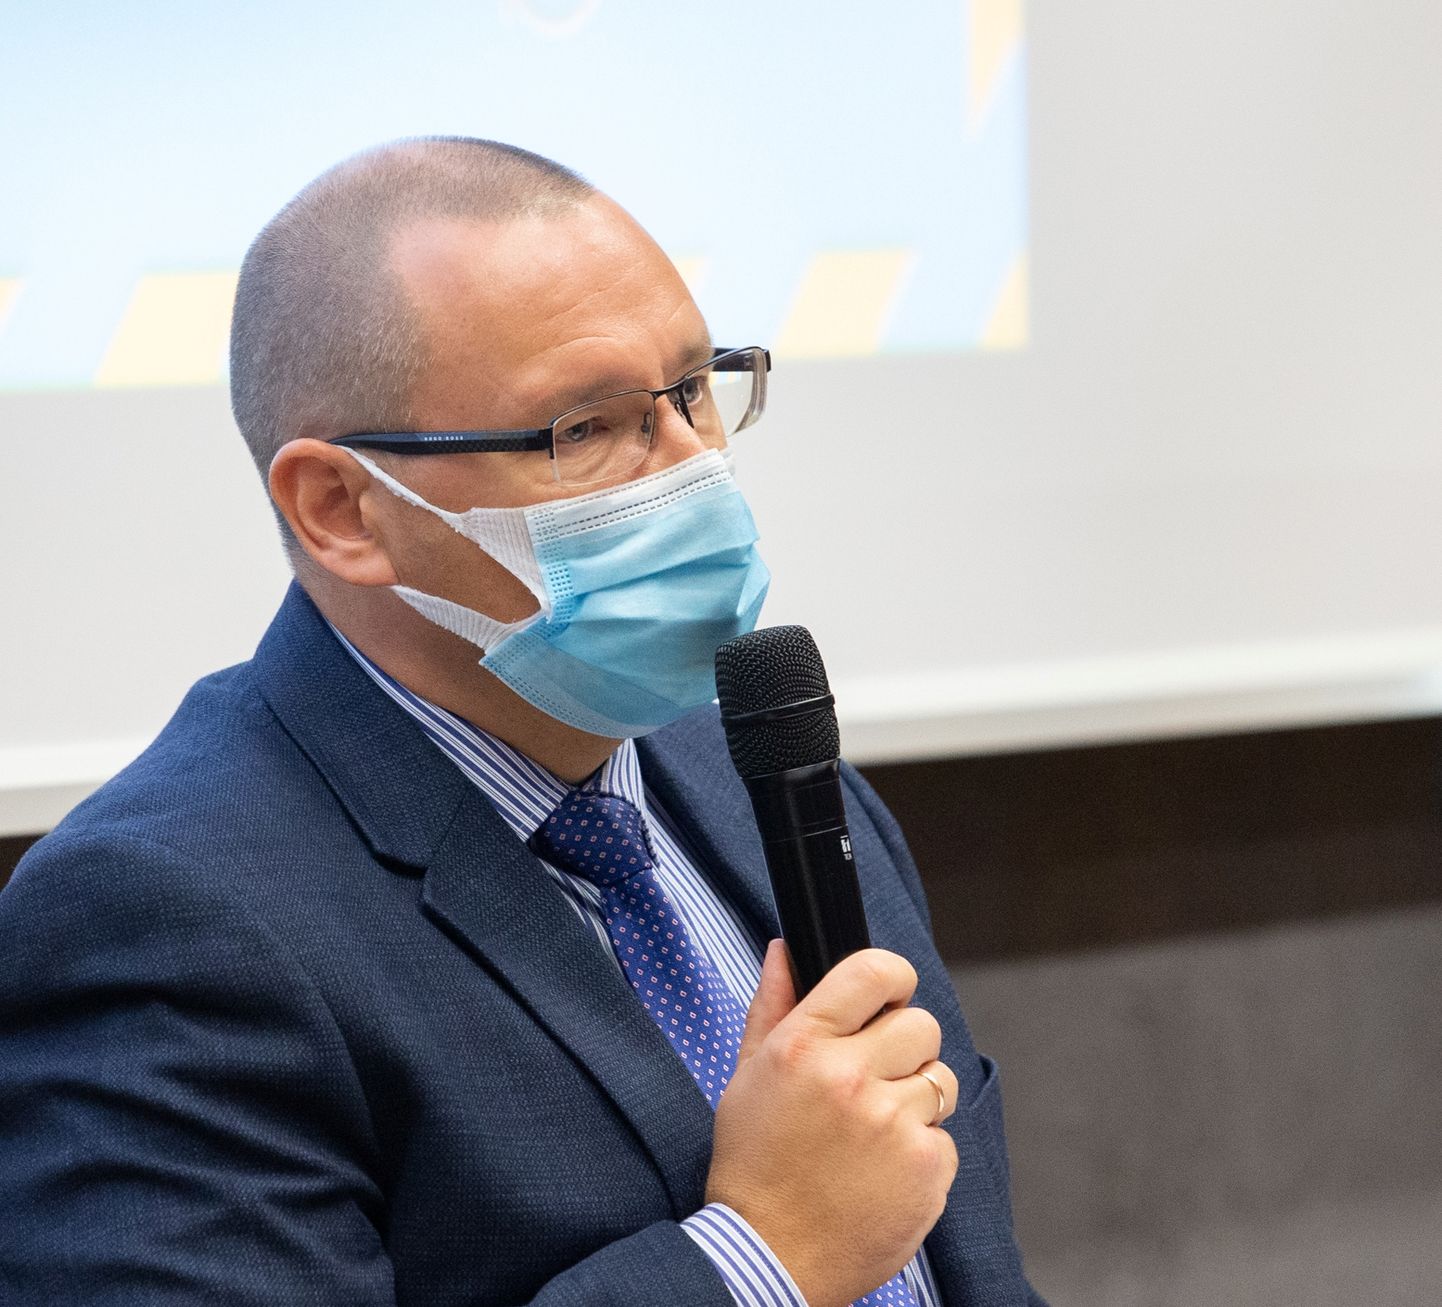 Arkadi Popov soovitas kõrge nakatumise tasemega regioonides kanda maski, kui inimene viibib näiteks ühissõidukis või on vaja tulla tööle, sest pole võimalik teha kaugtööd.